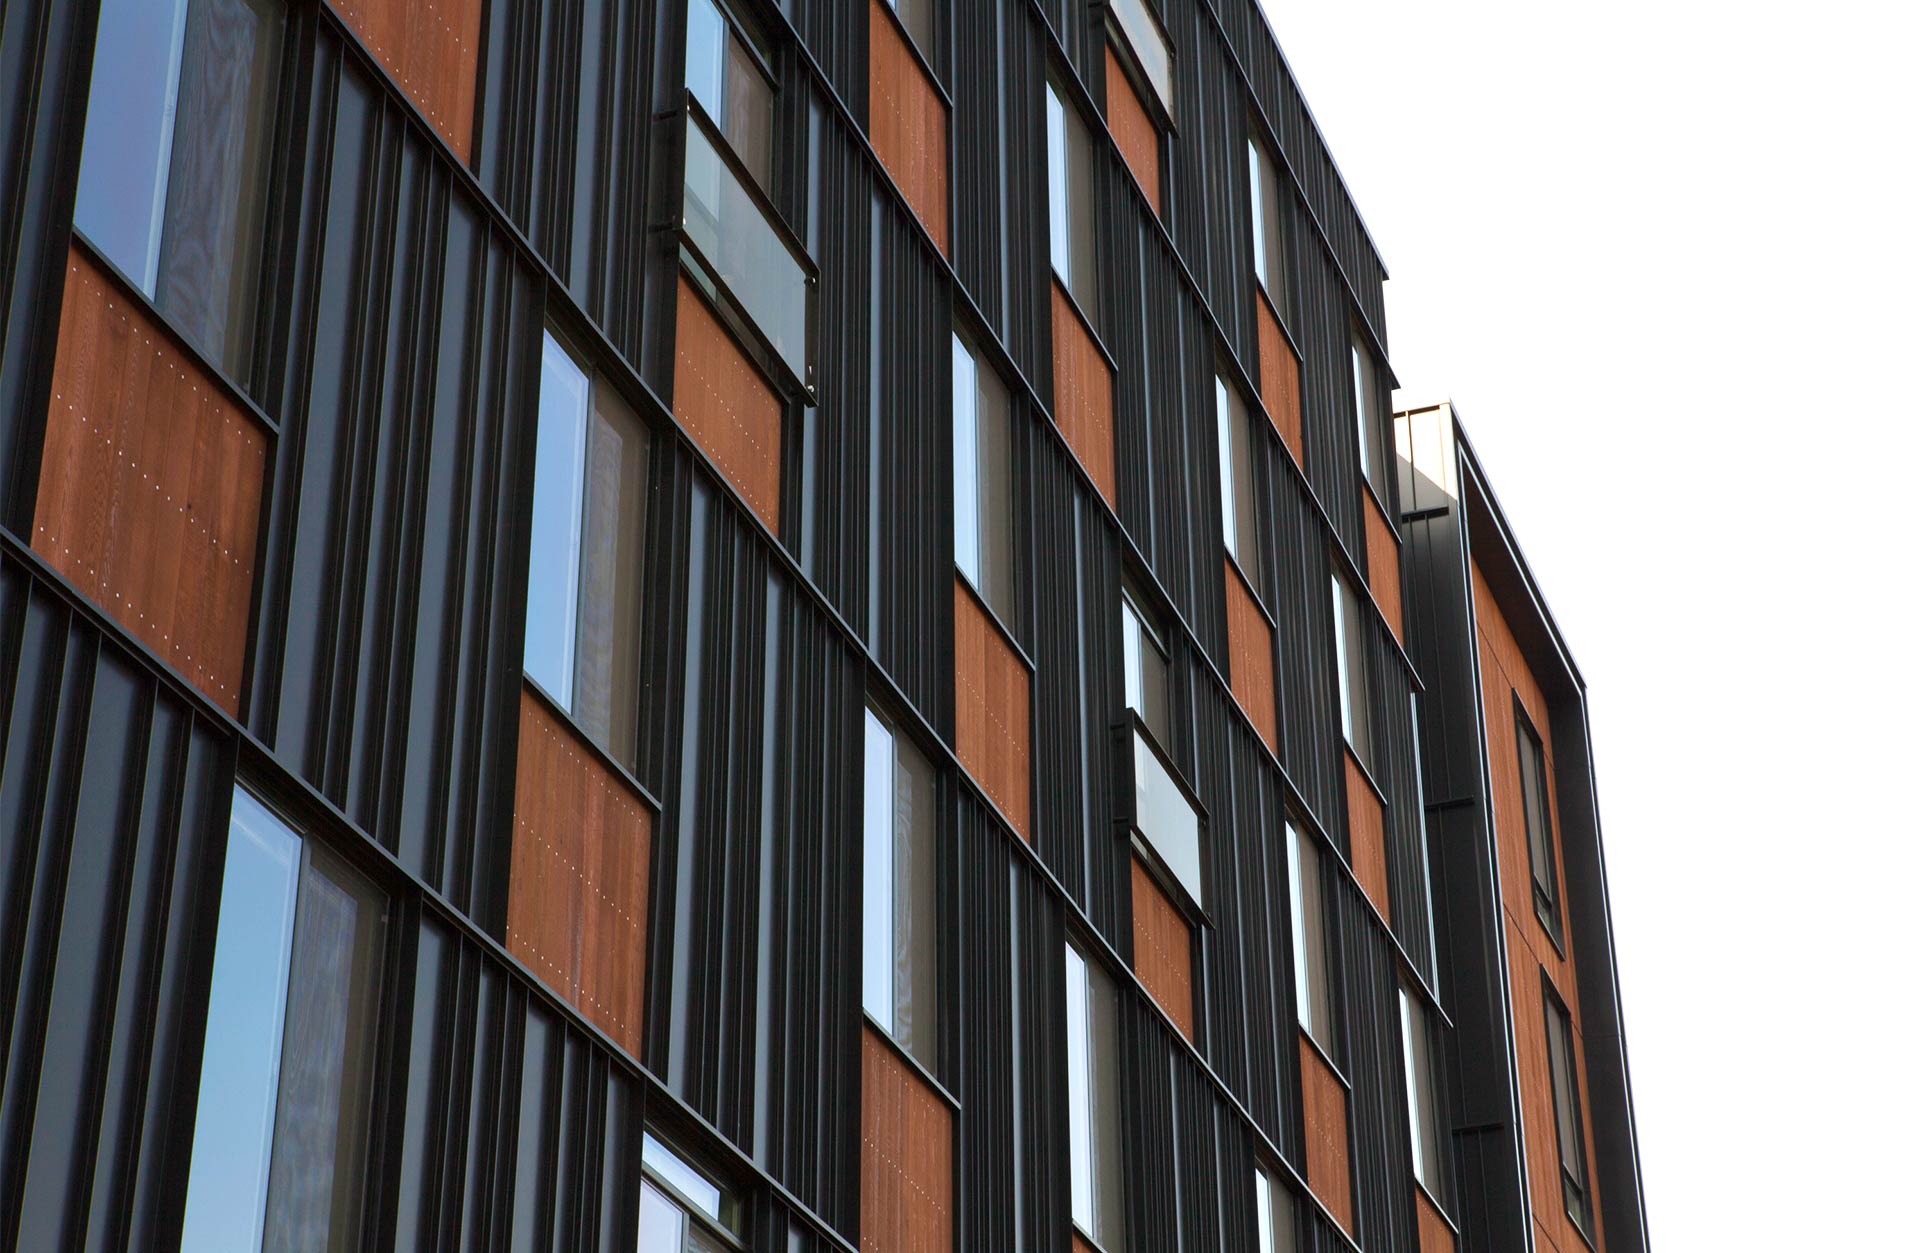 K-14 apartment exterior windows